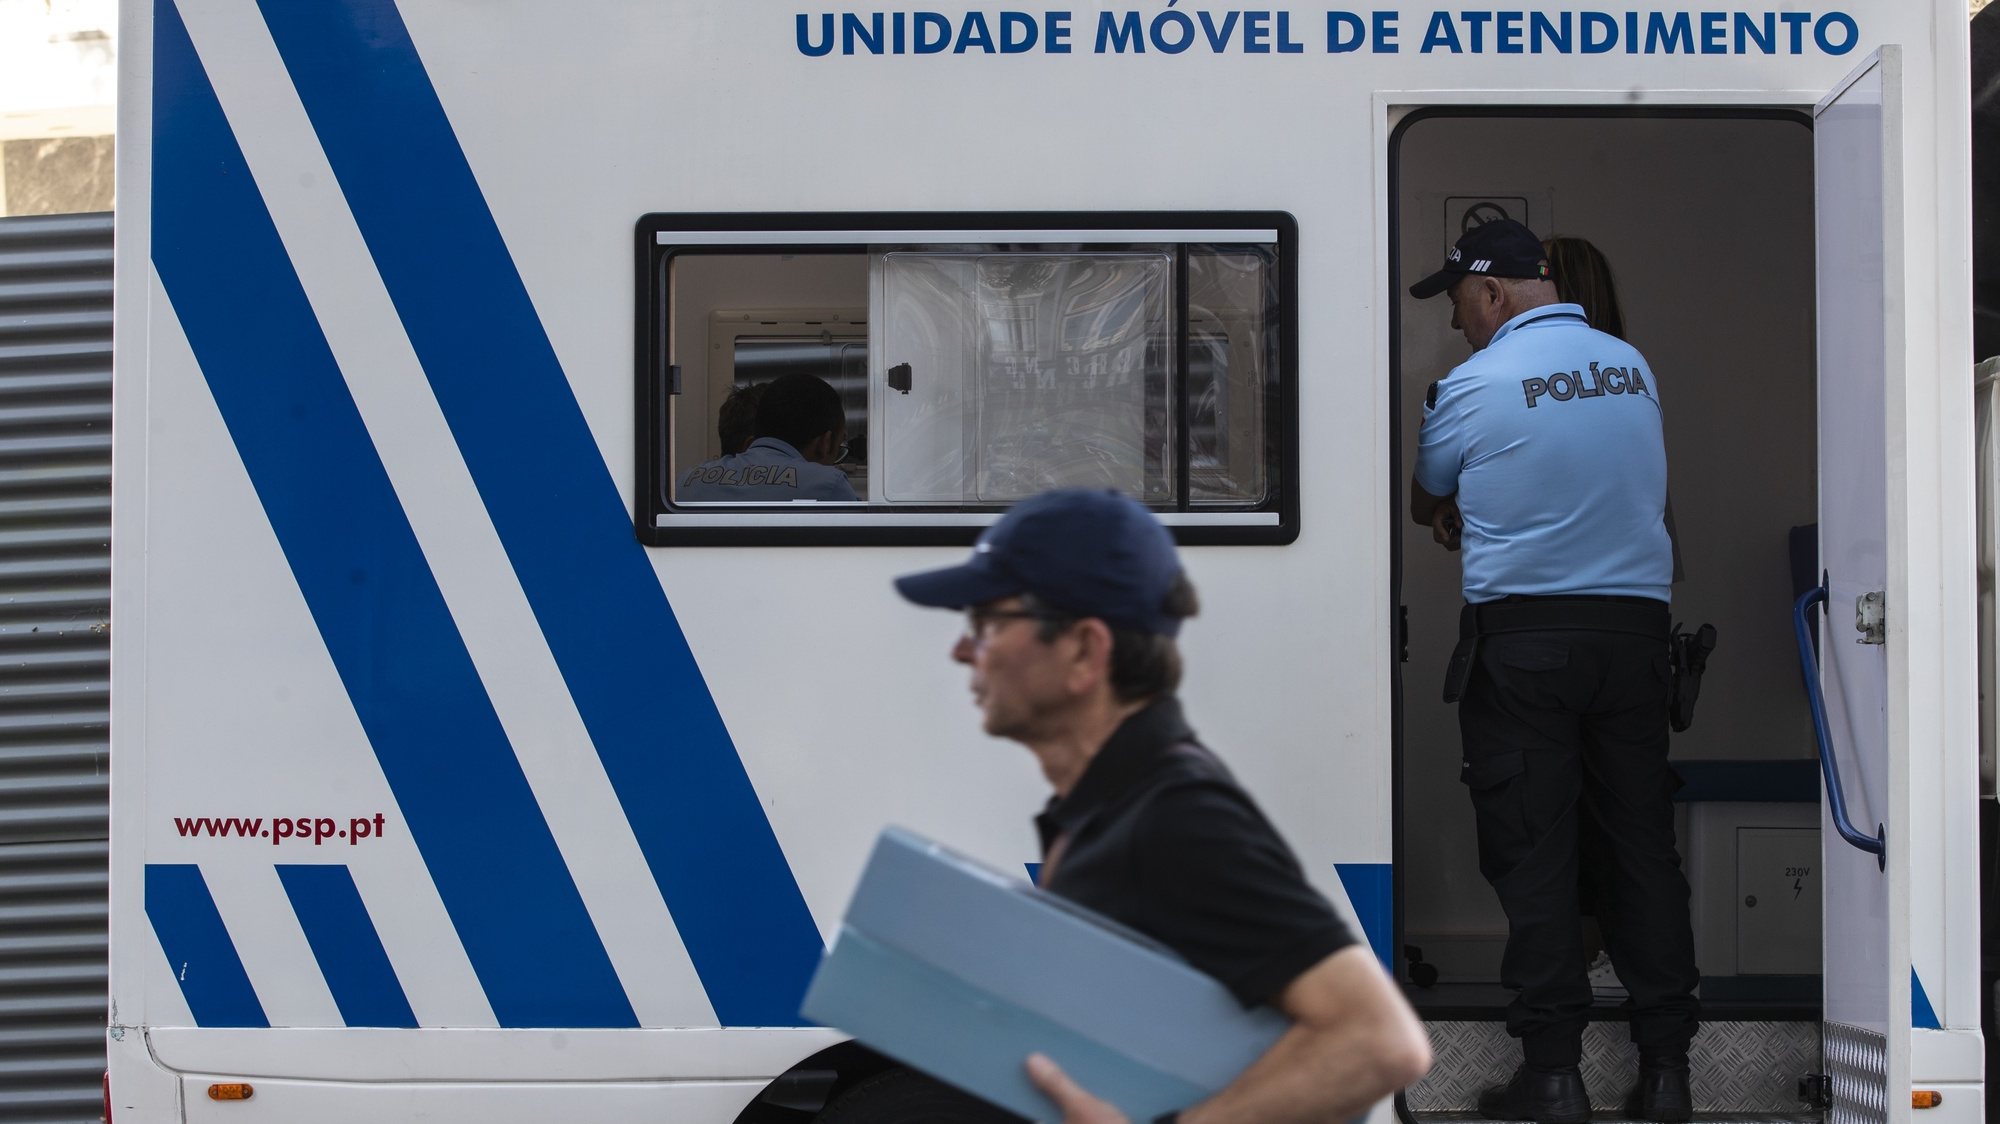 Elemento da Polícia de Segurança Pública (PSP) durante a apresentação das Unidades Móveis de Atendimento da PSP, na Praça da Batalha, no Porto, 28 de julho de 2022. As unidades móveis de atendimento, foram apresentadas hoje, simultaneamente em Lisboa e no Porto. JOSÉ COELHO/LUSA